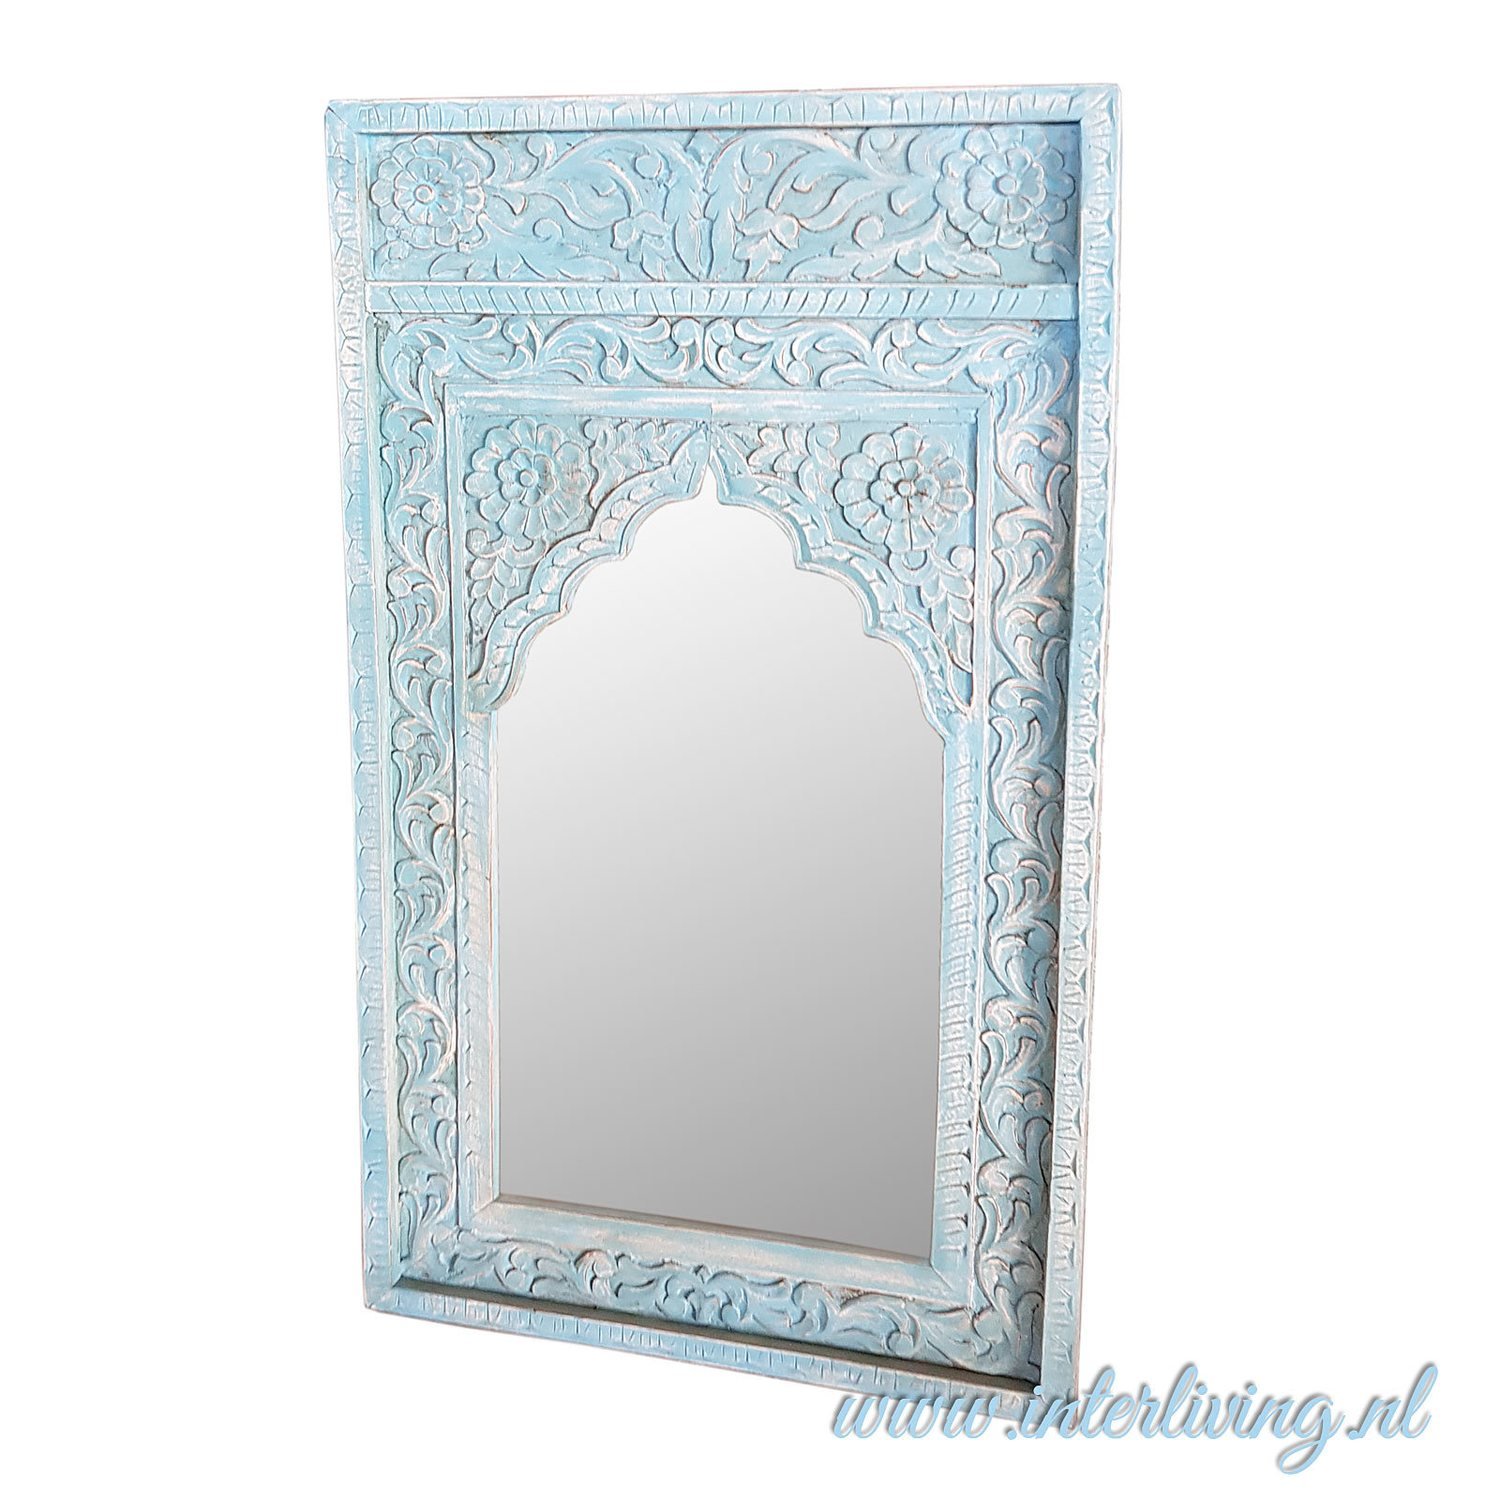 afgewerkt blouse sjaal Marokkaanse stijl spiegel met oosterse oude houten lijst - bogen en  houtsnijwerk - vintage blue wash - 120 cm